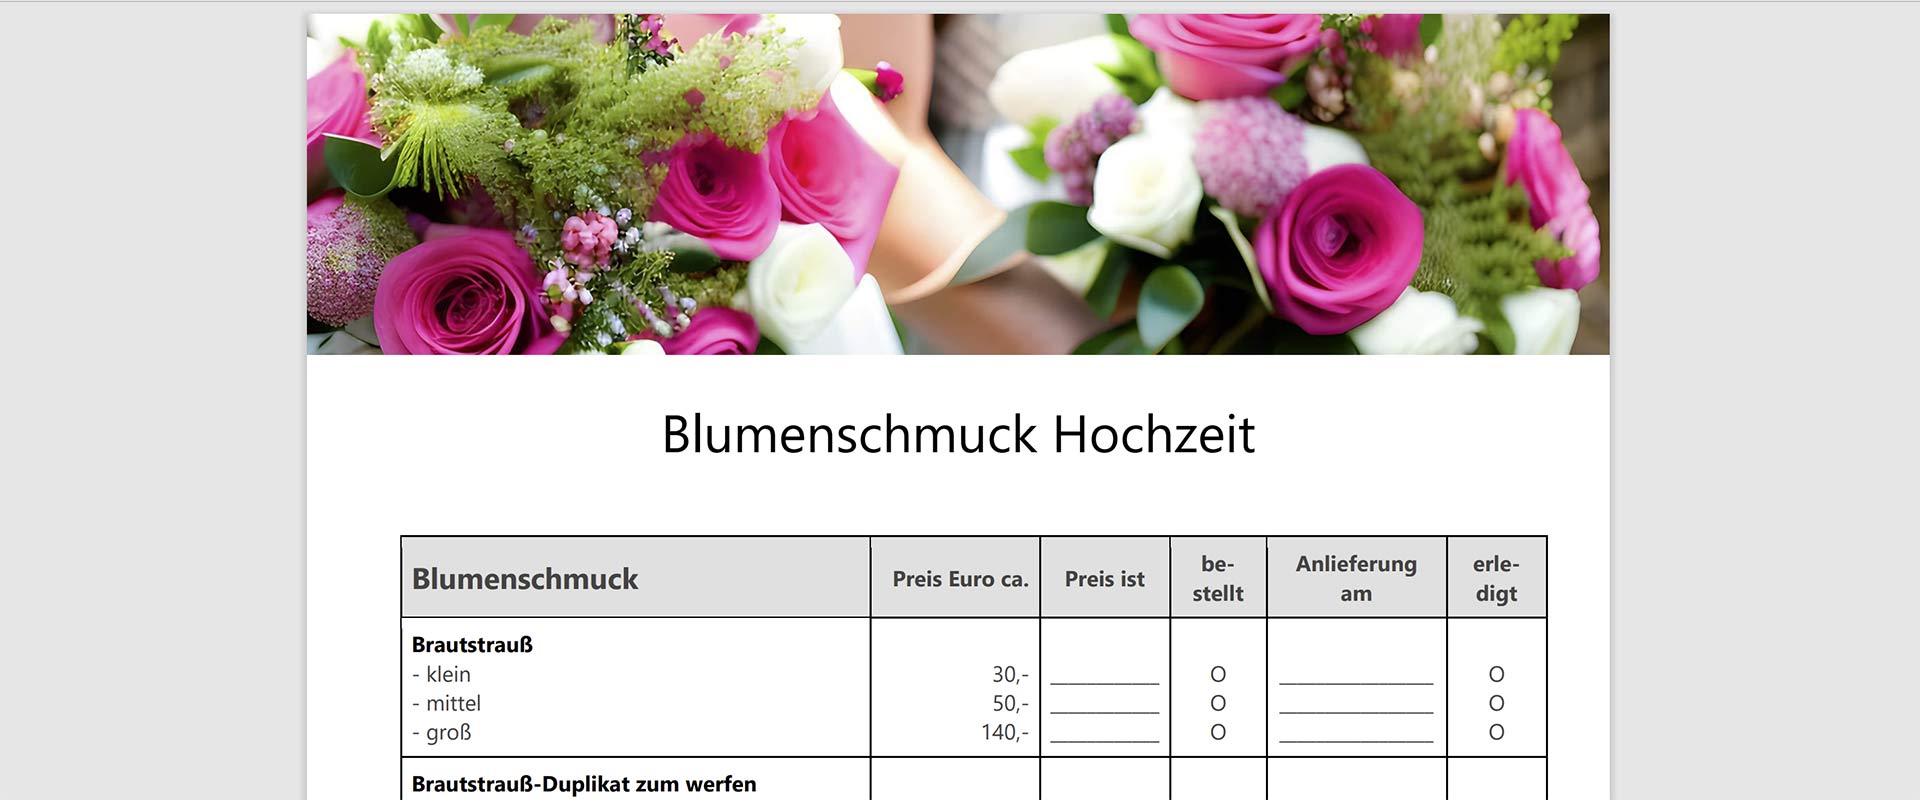 Blumenschmuck Hochzeit Checkliste Download